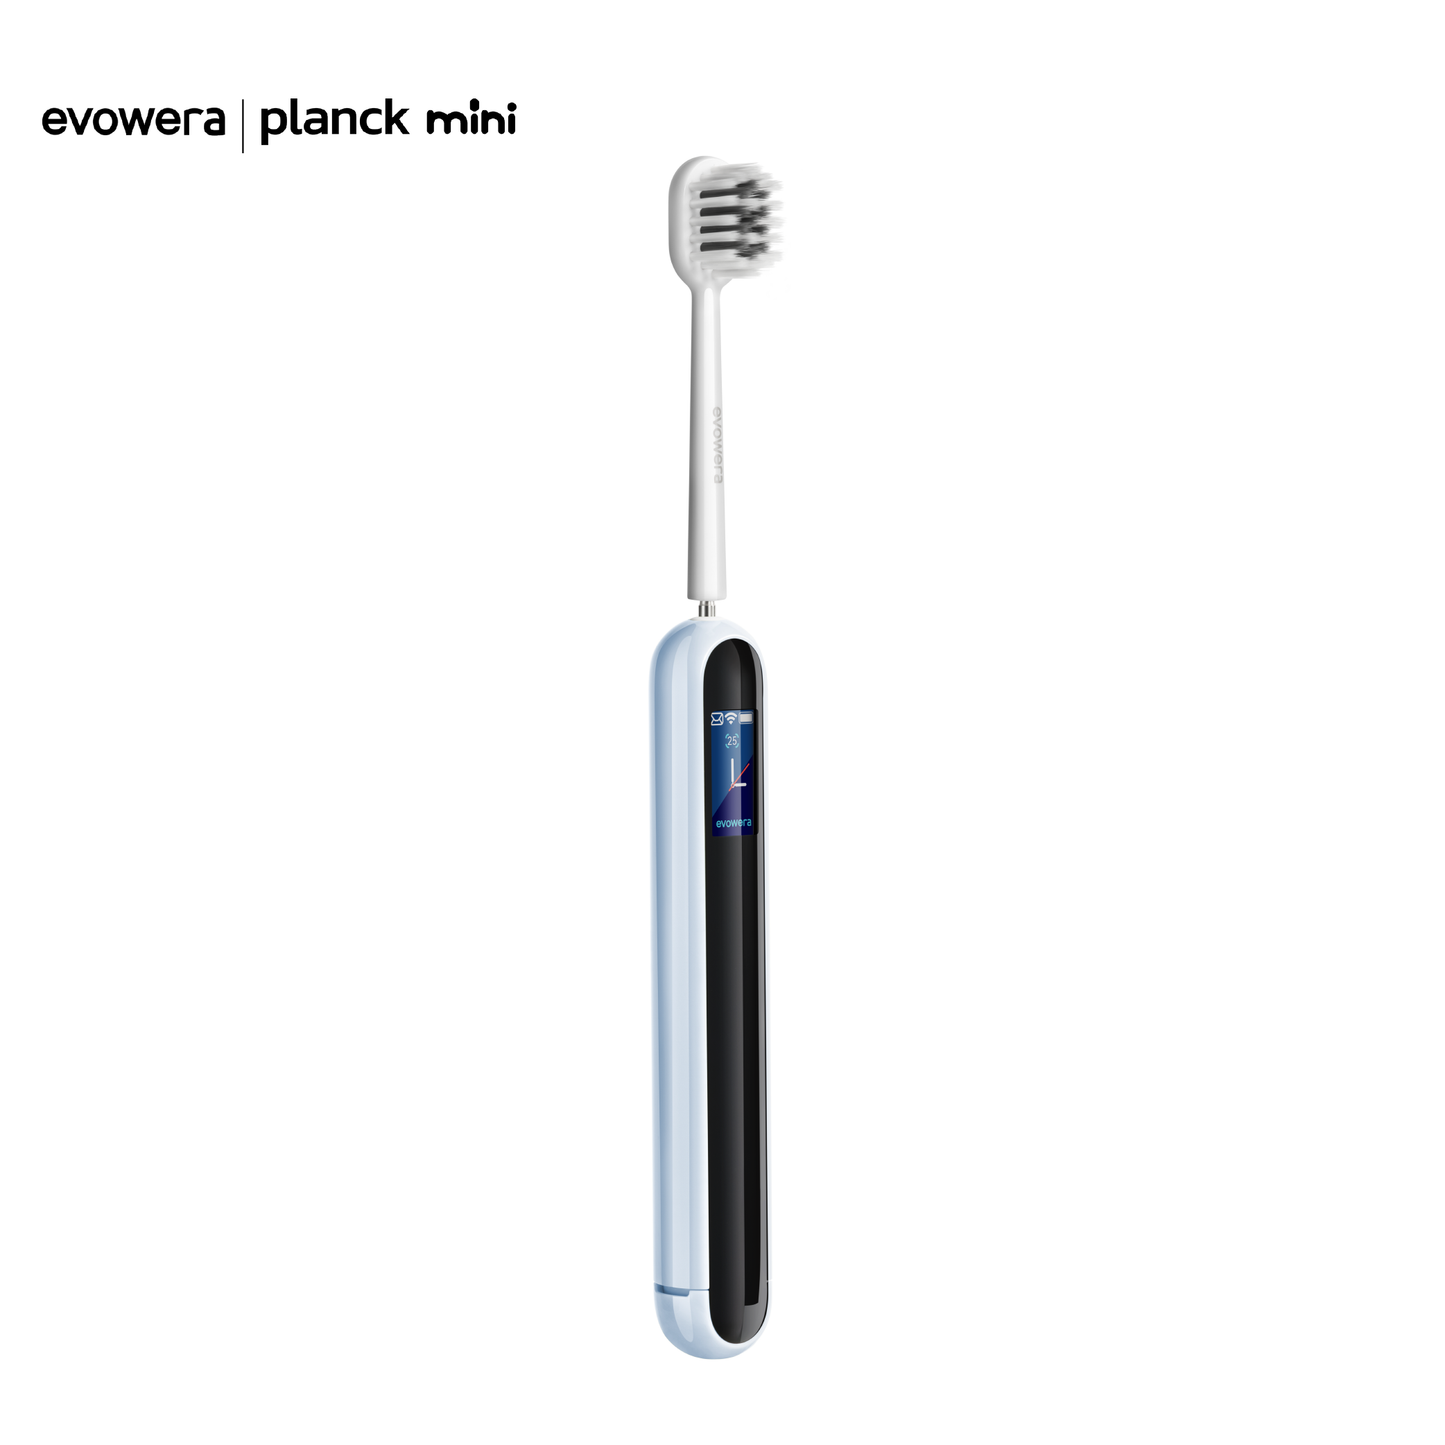 Planck Mini für Erwachsene, intelligente Handzahnbürste